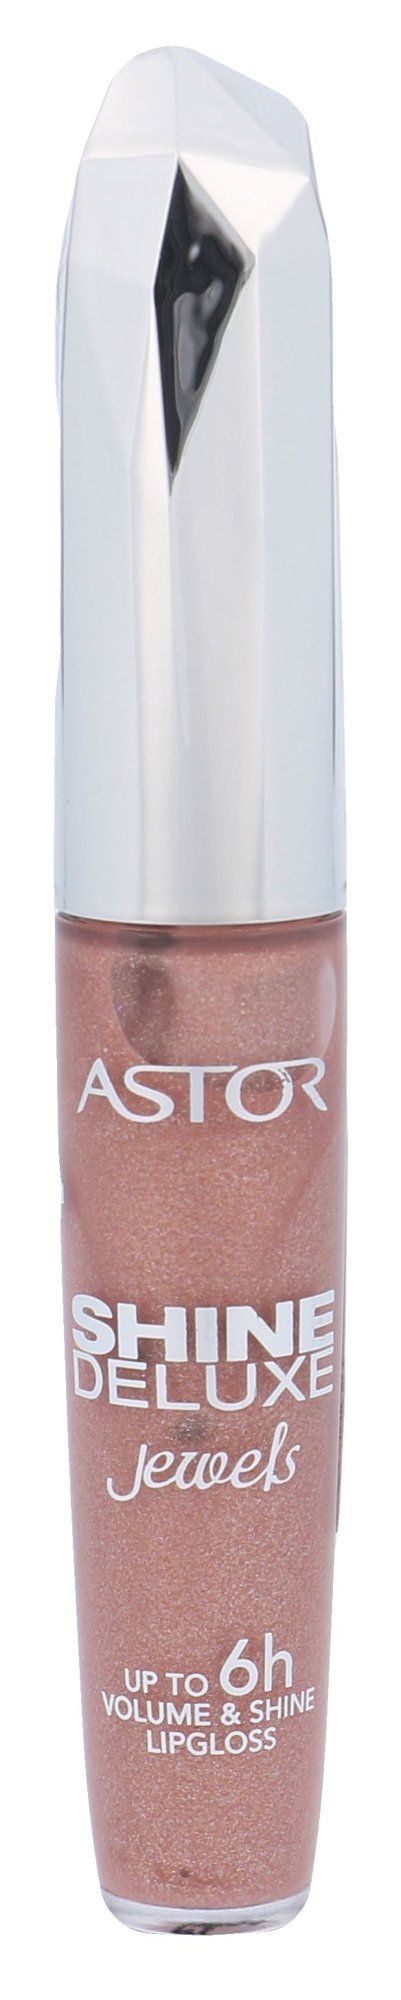 Astor Shine Deluxe Jewels 5,5ml lūpų blizgesys